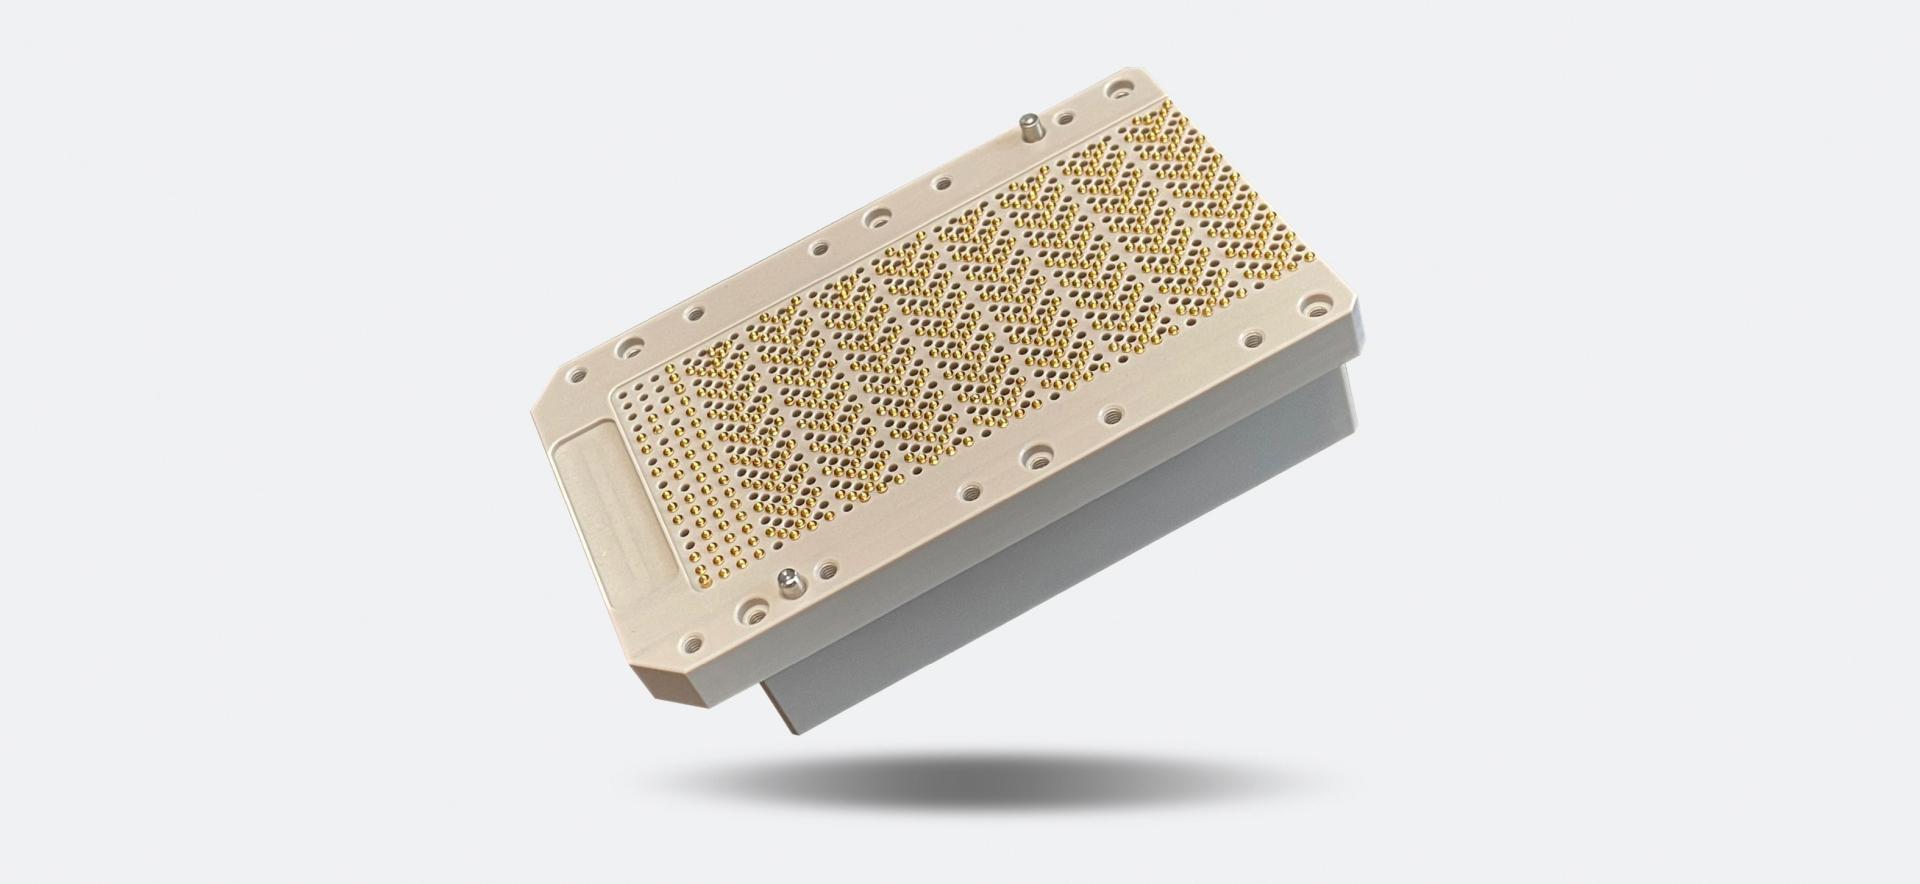 particolare fresato in PEEK utilizzato per alloggiare i pin usati per il test dei semiconduttori nel settore elettronico